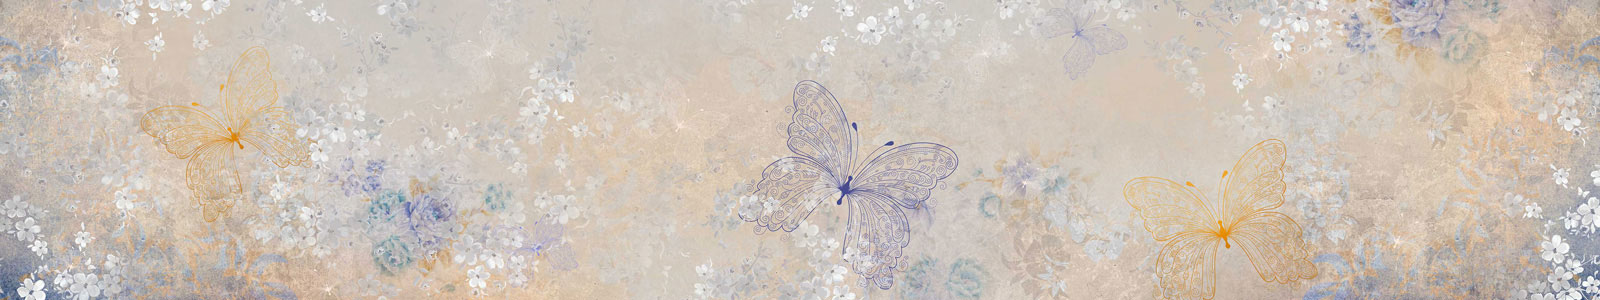 №4659 - Фон в графические цветы и бабочки